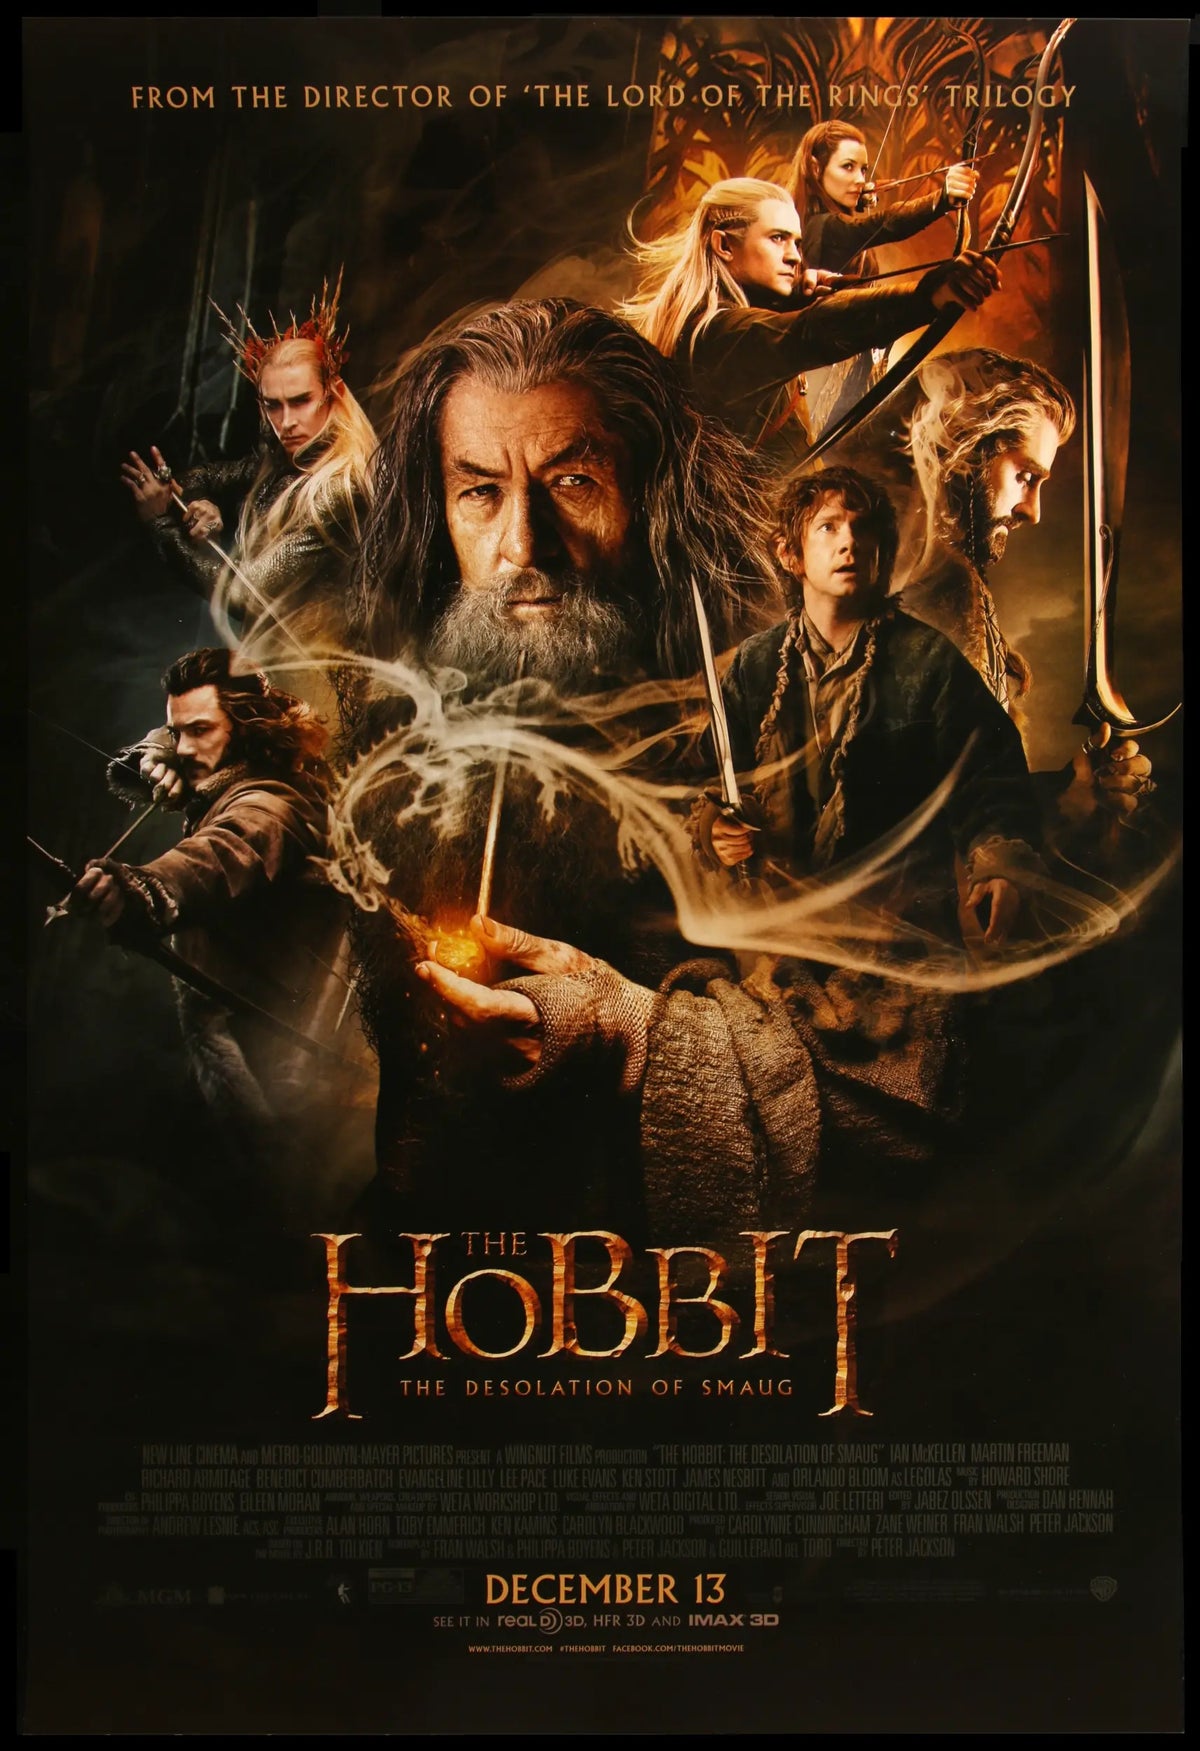 Hobbit - The Desolation of Smaug (2013) original movie poster for sale at Original Film Art